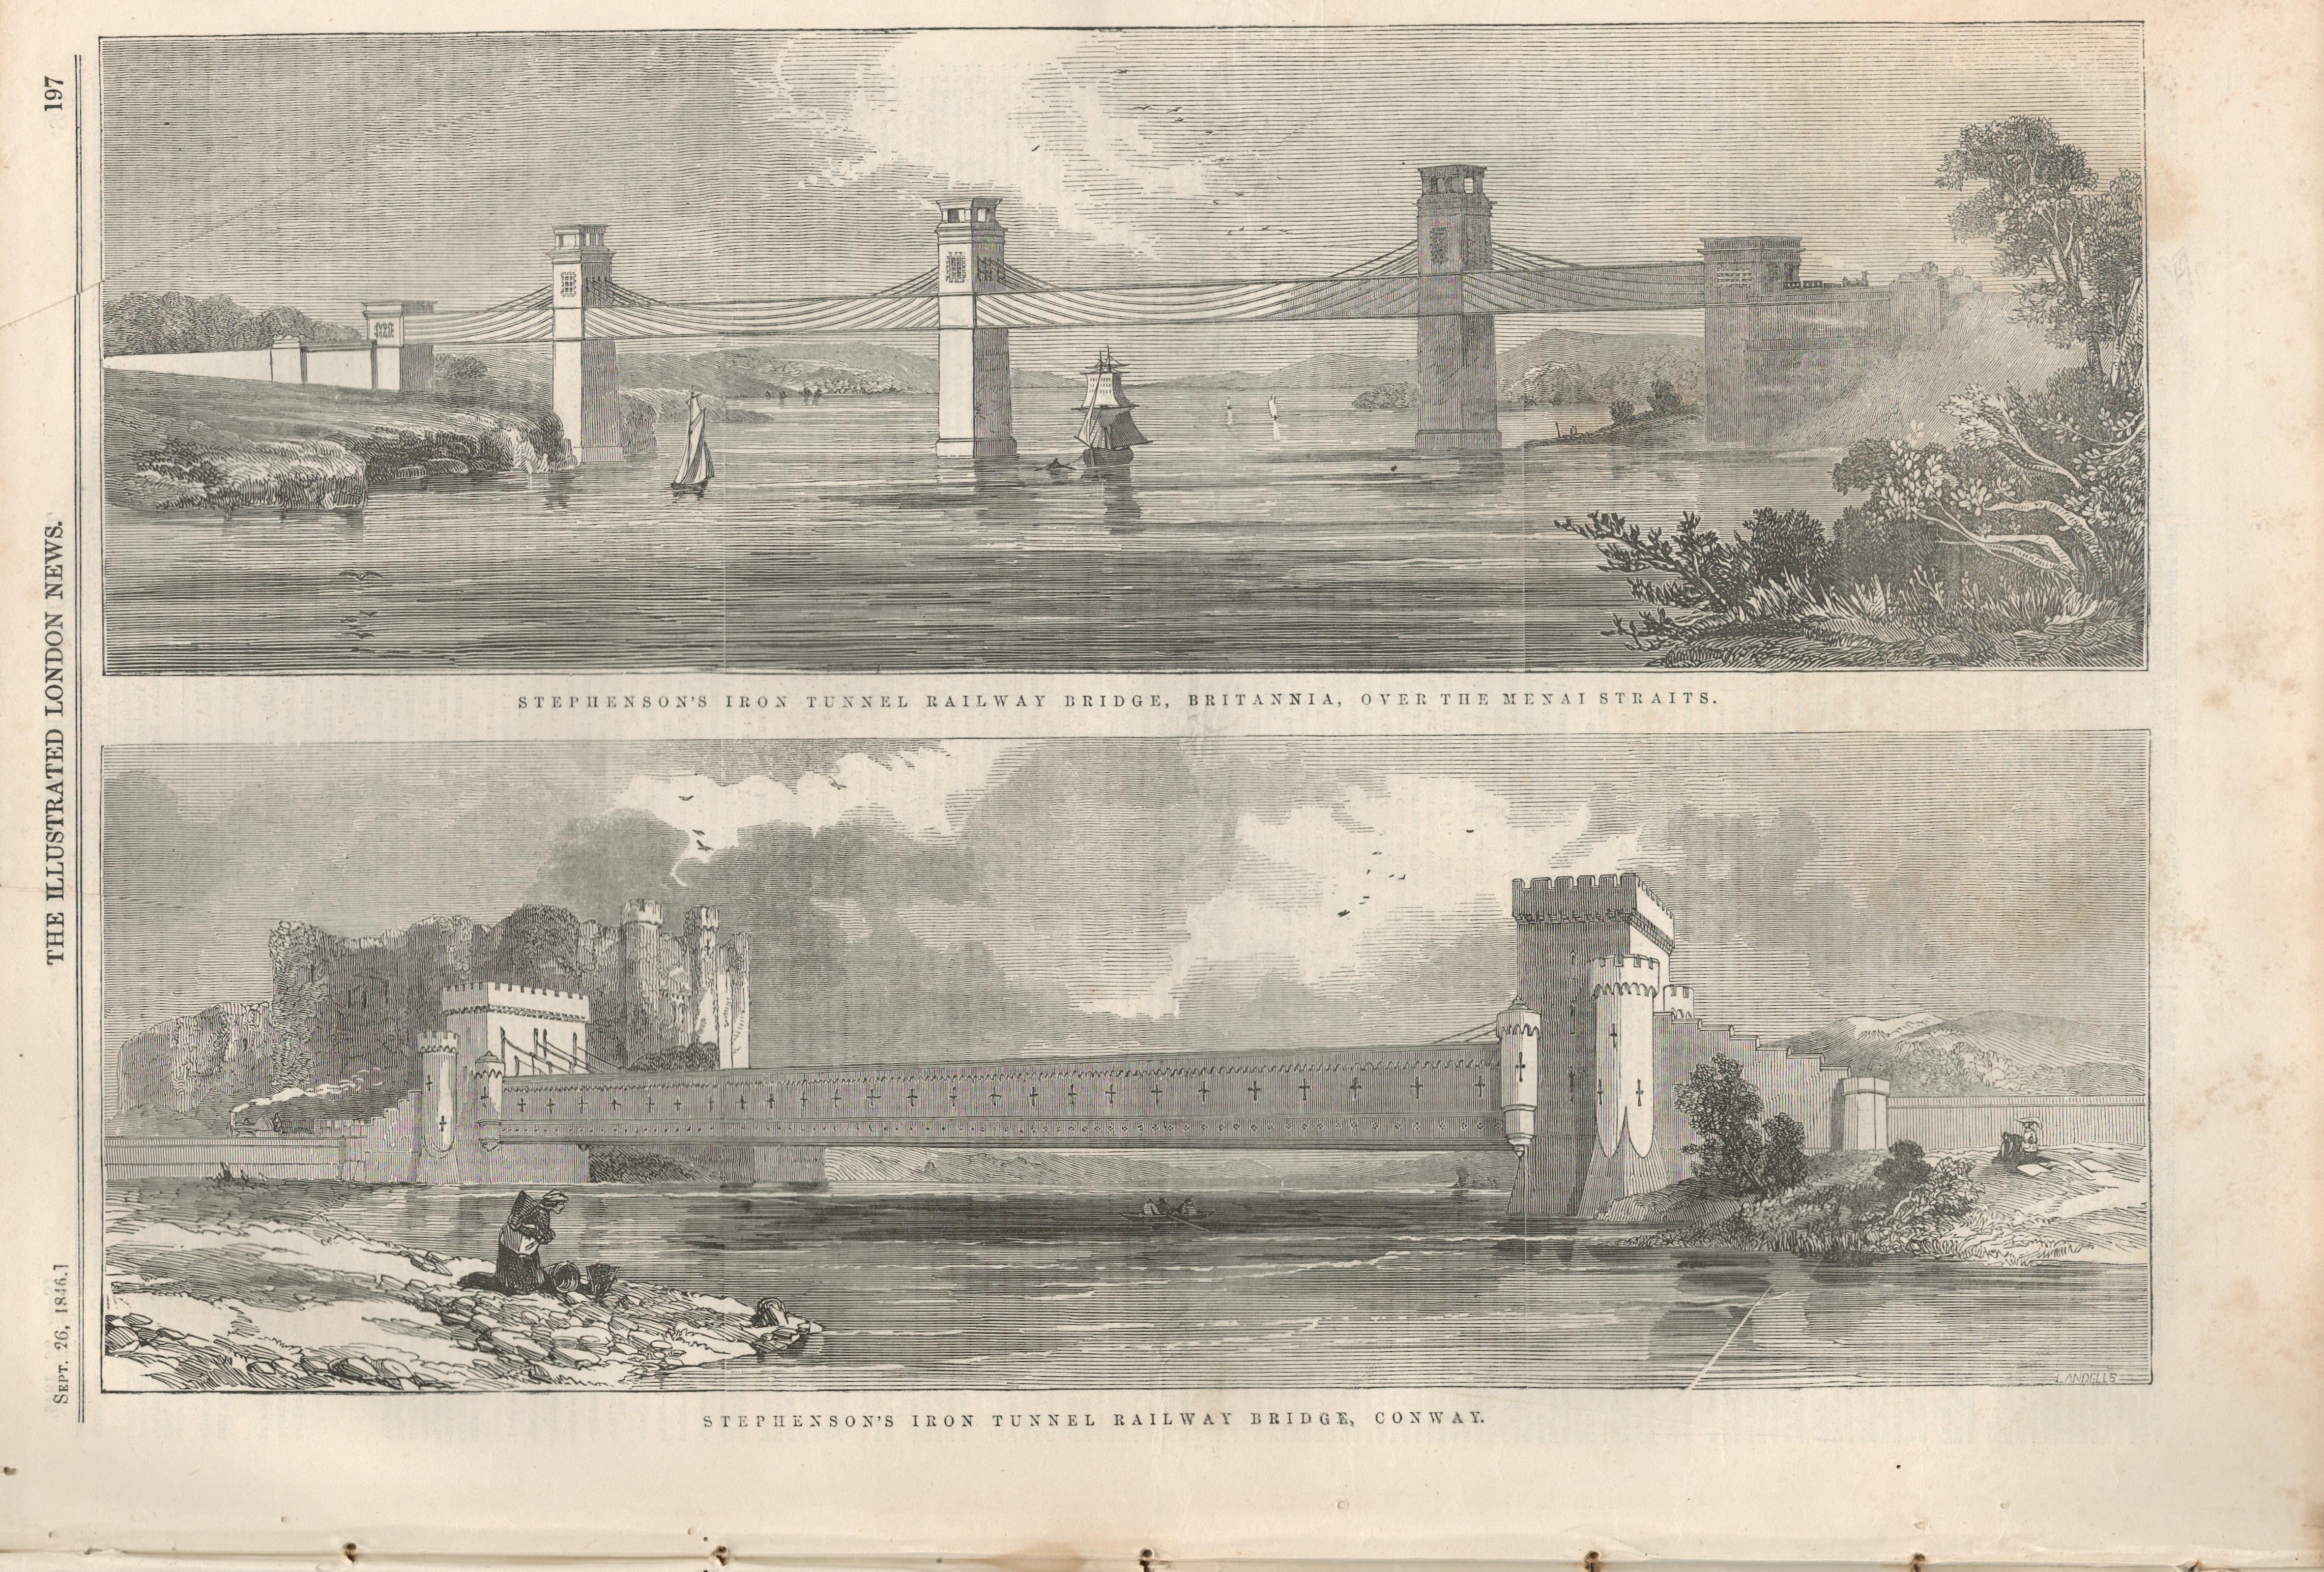 Stephenson Railway Bridges Menai Straits, Conwy 1846 Newspaper